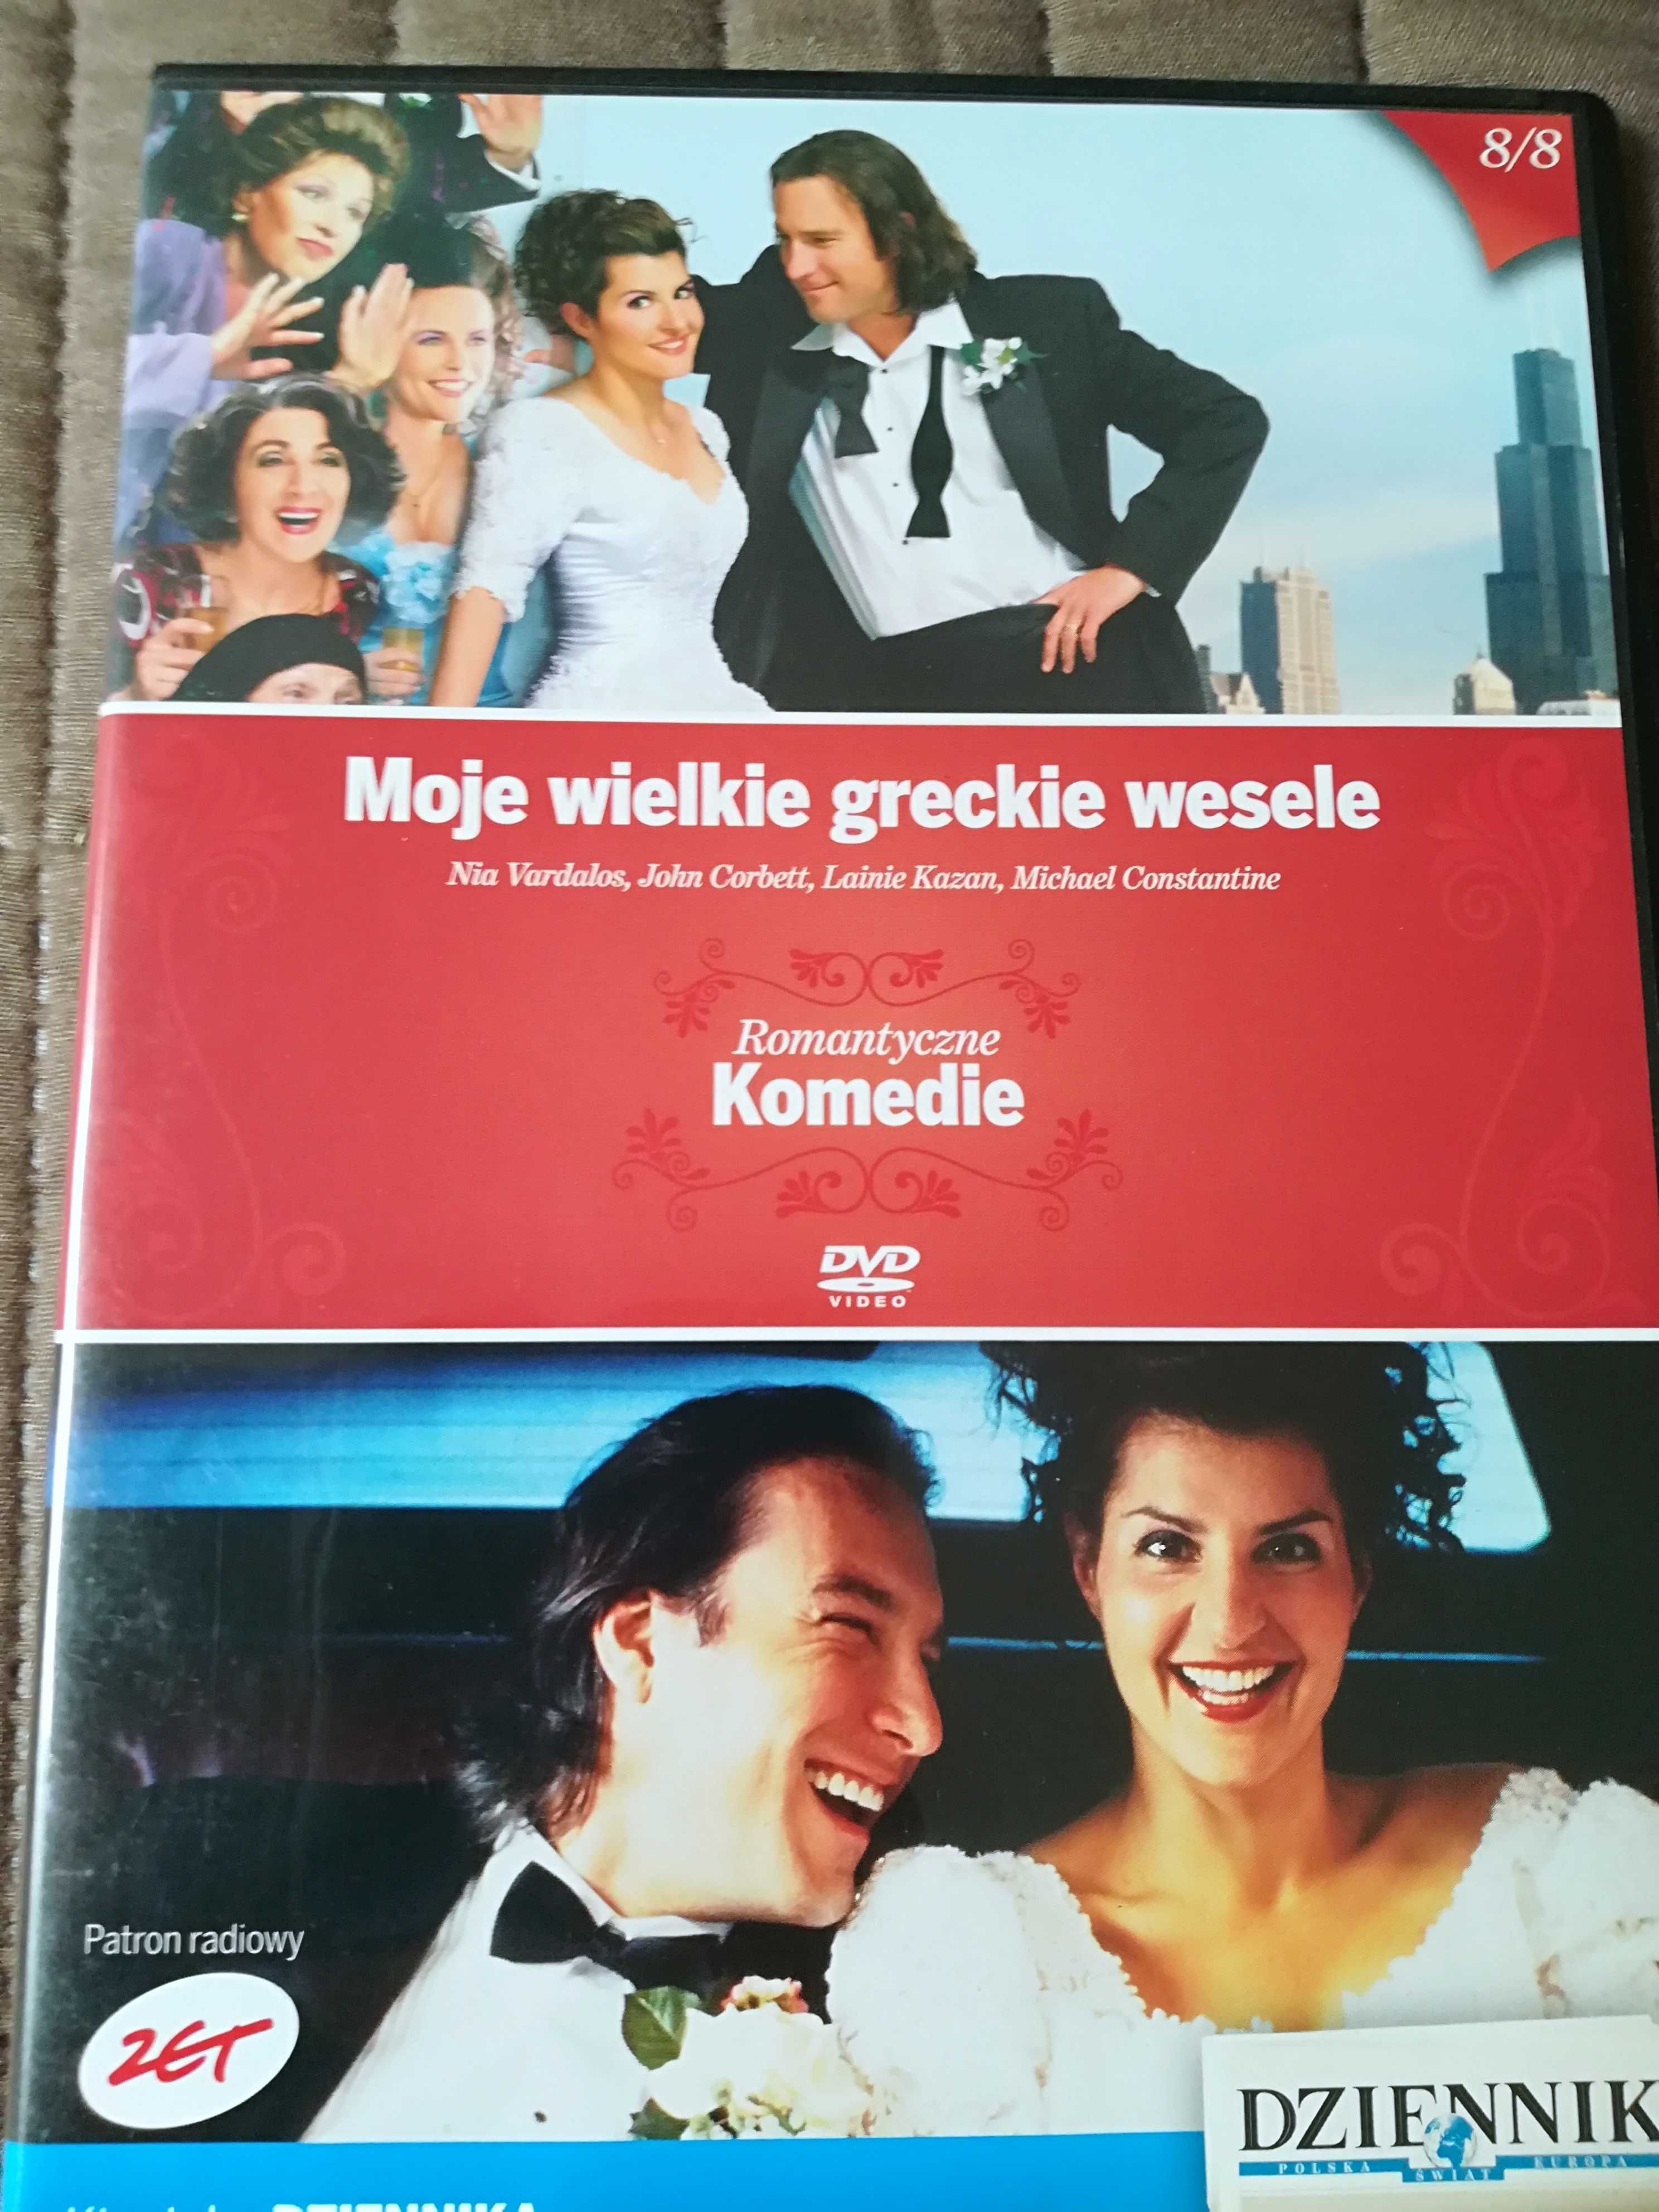 Moje wielkie greckie wesele. Film na DVD